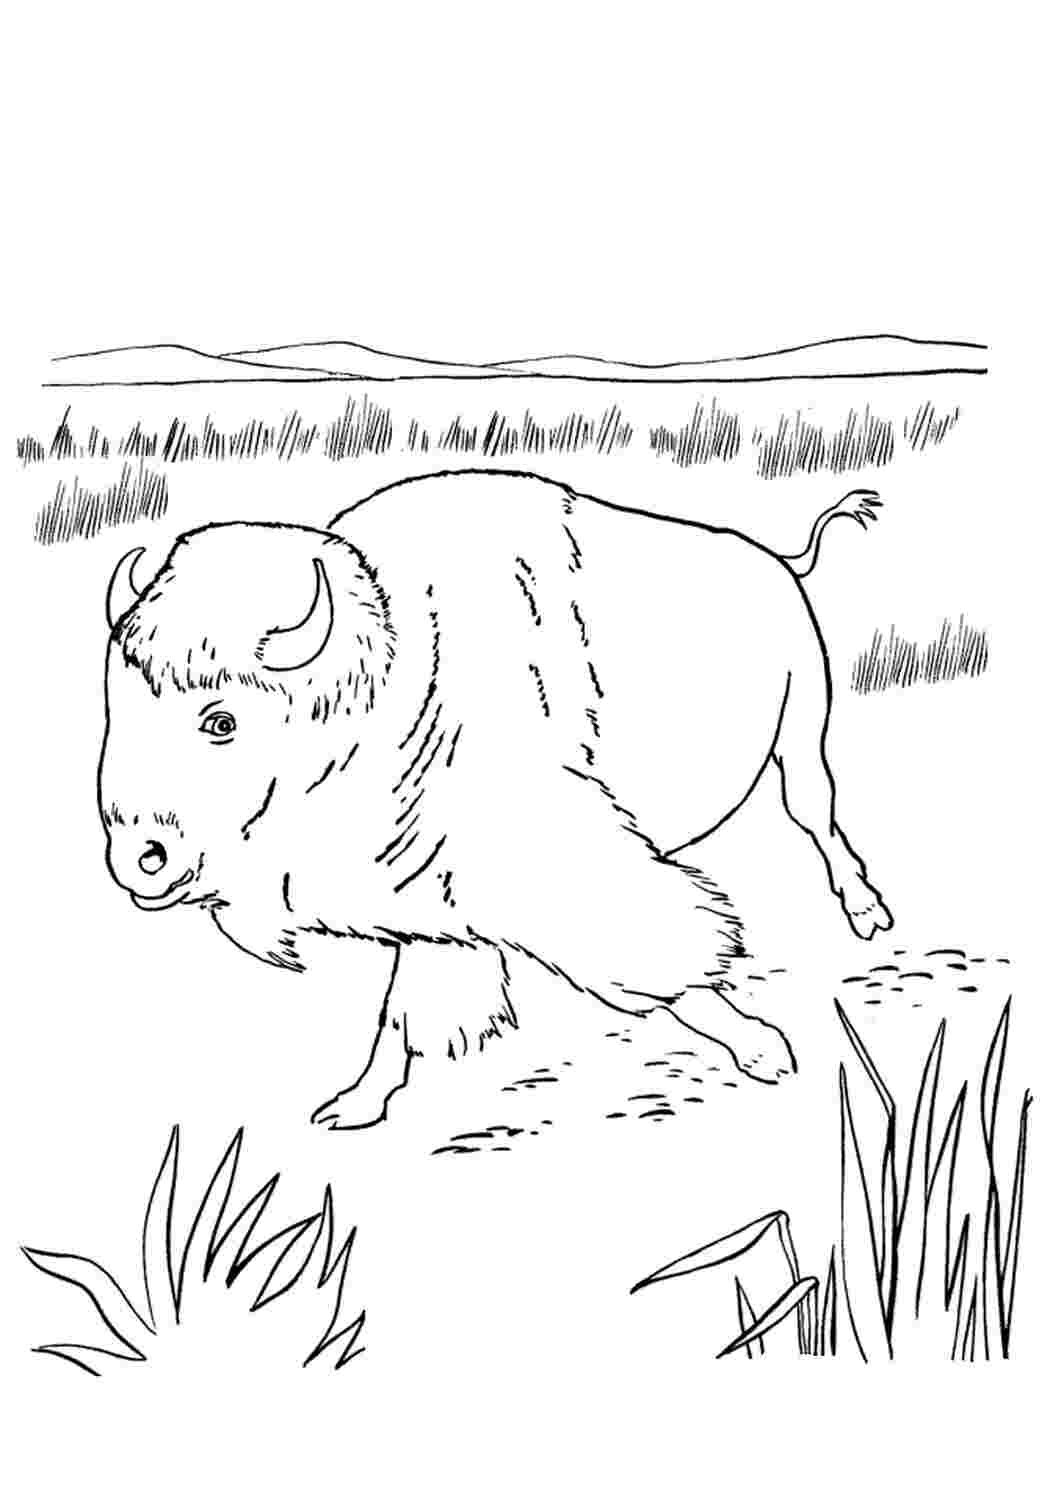 Страница раскраски американского бизона для взрослых векторная иллюстрация